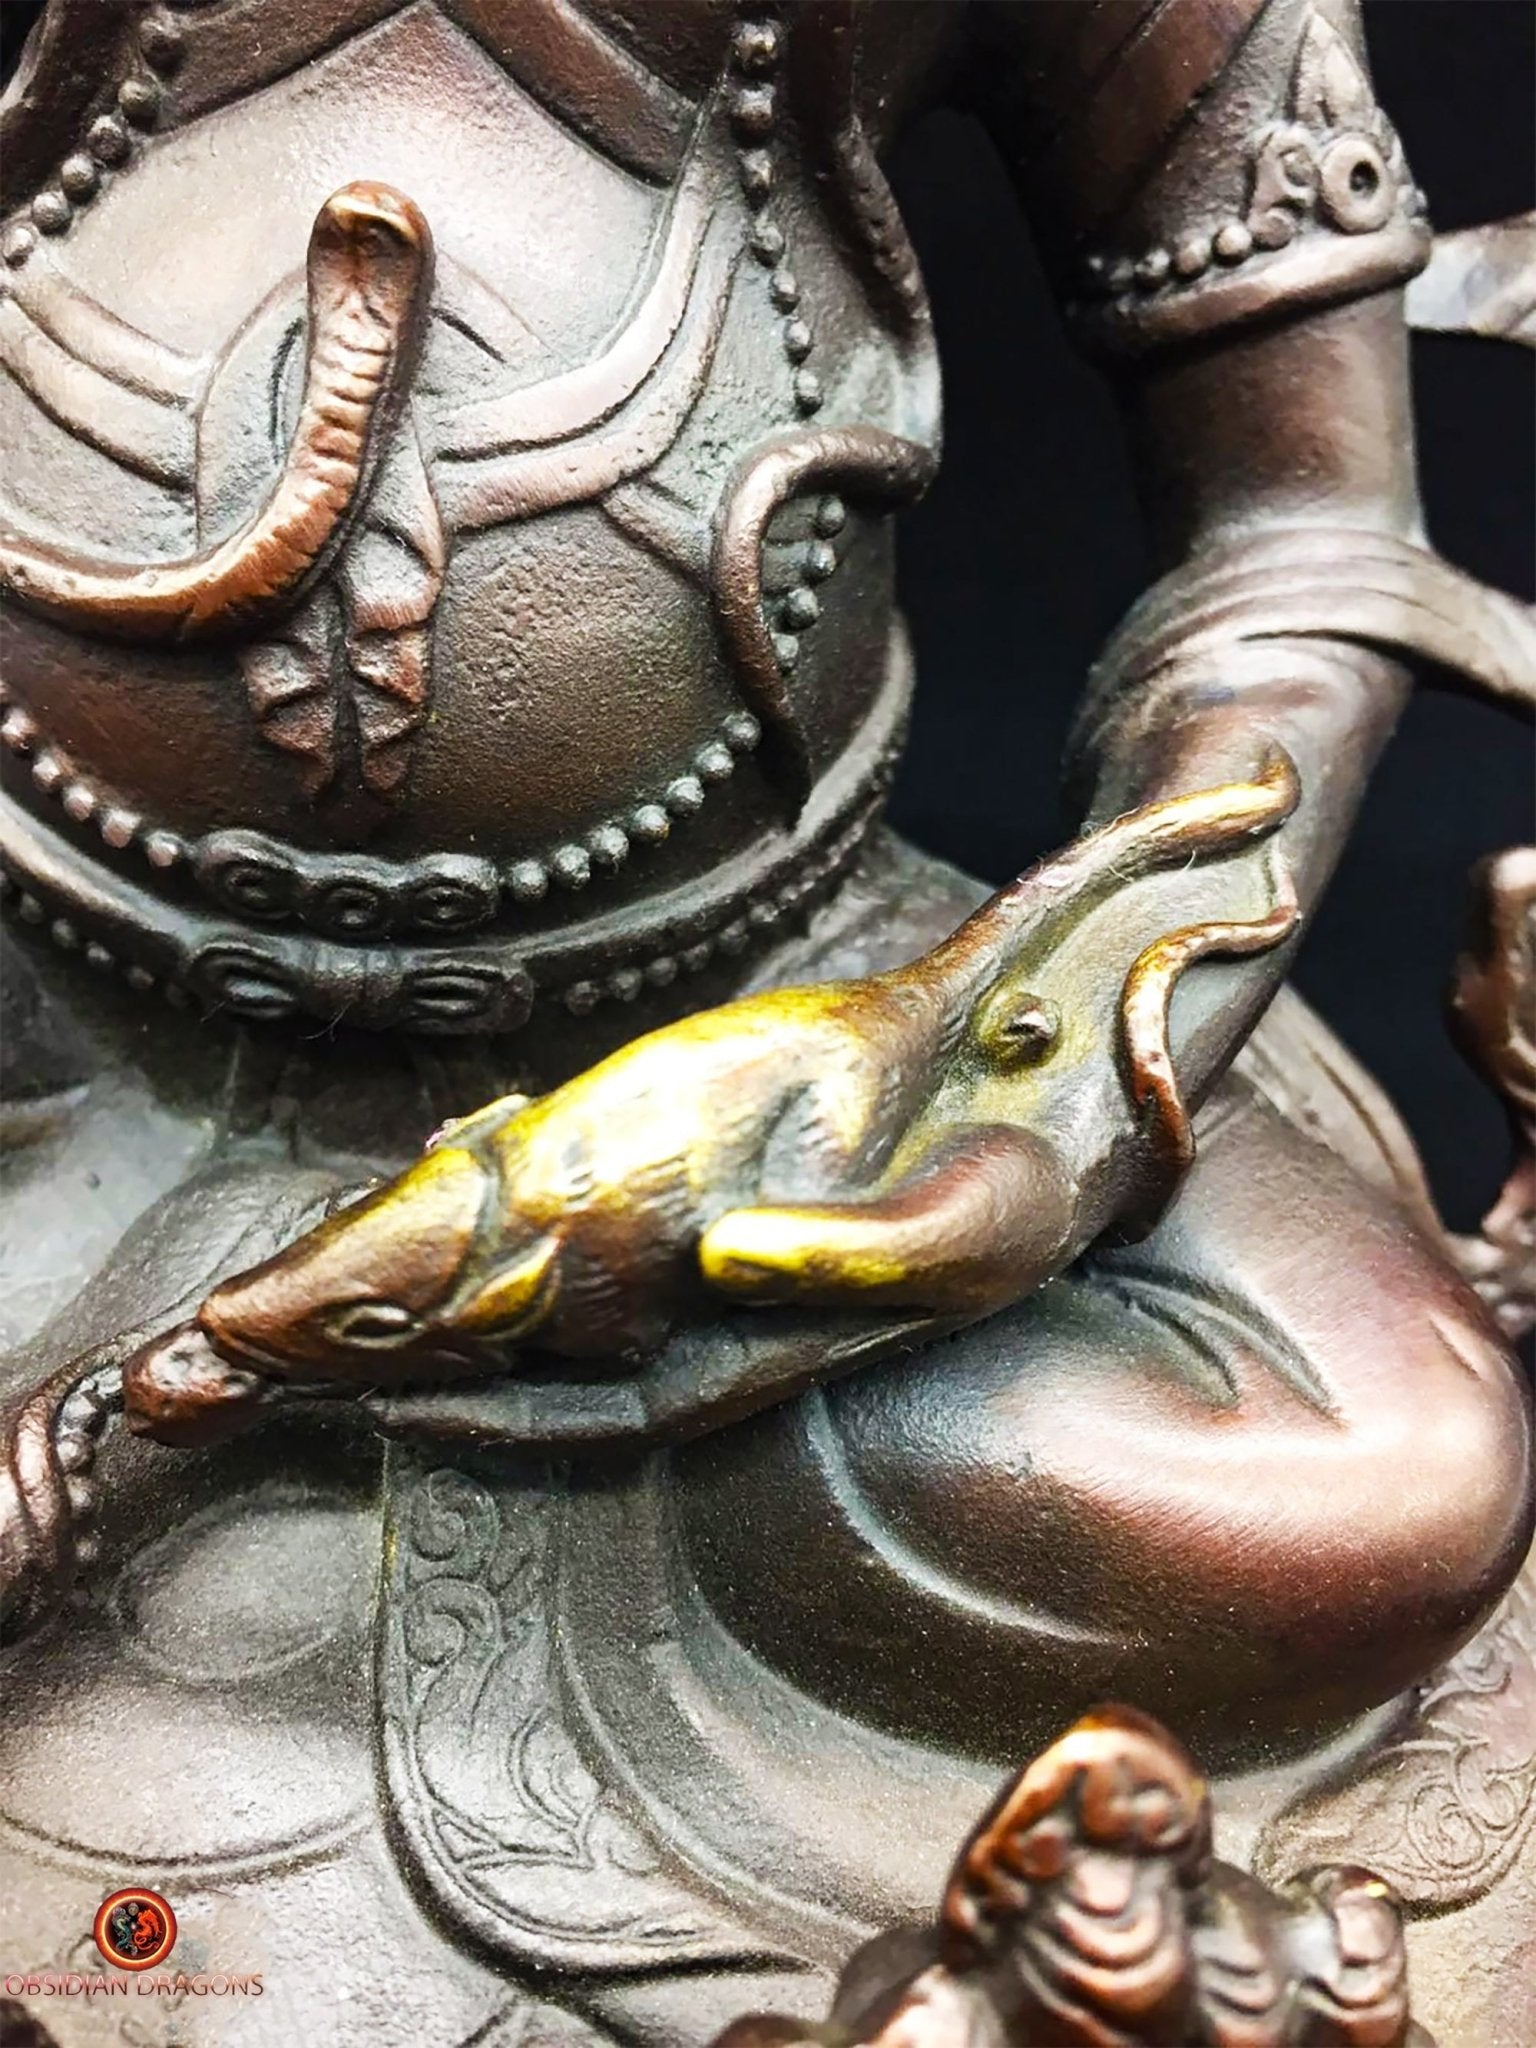 Statuette bouddhiste, statue bouddha. Déité Jambhala, dieu de la fortune du bouddhisme tibétain. - obsidian dragon